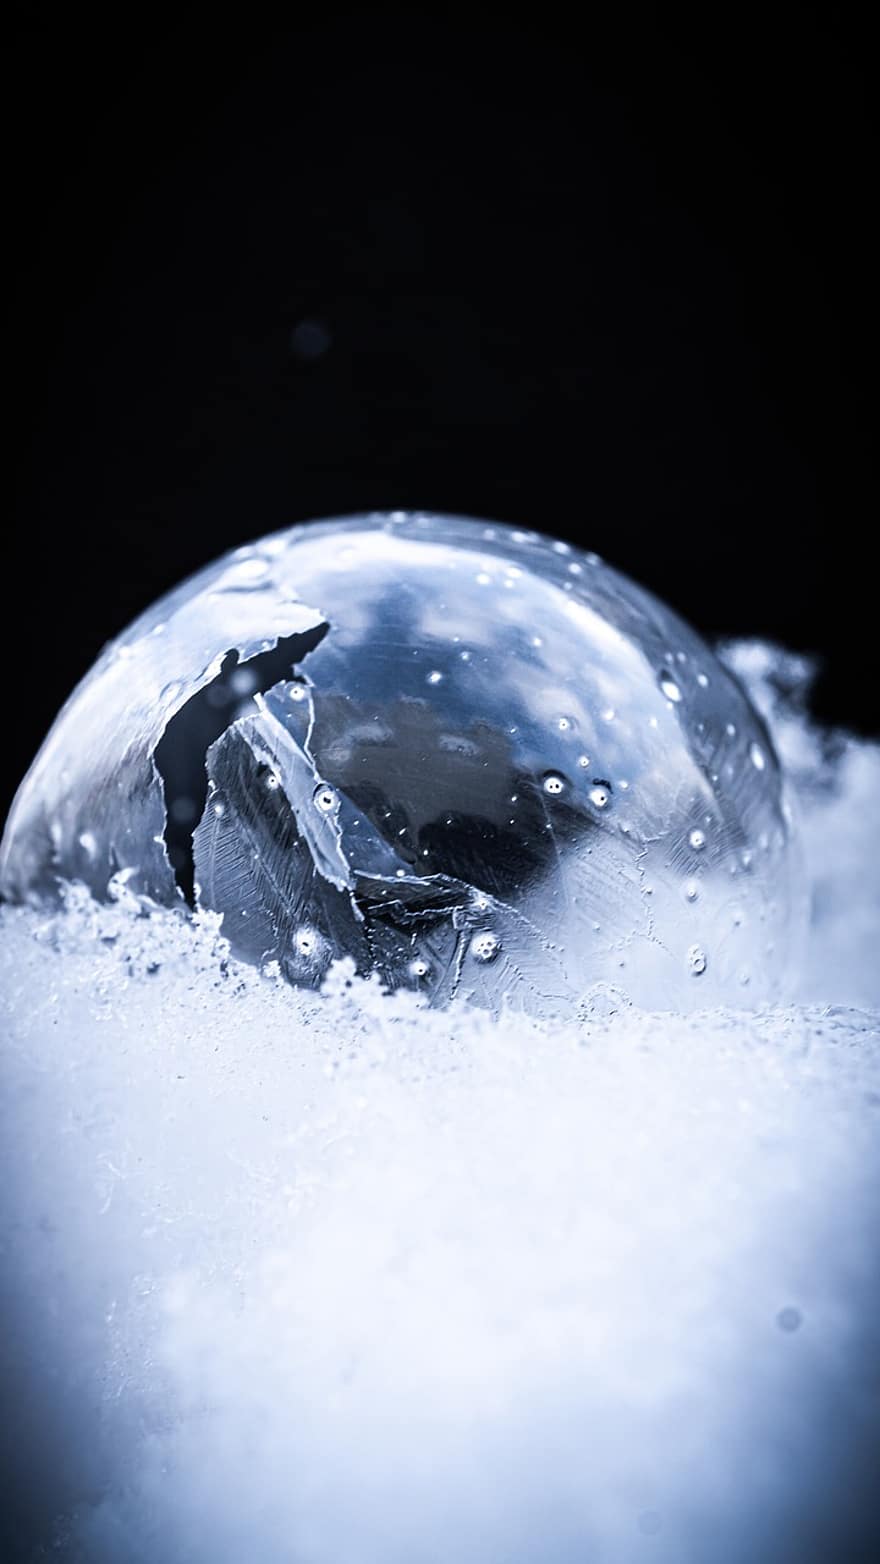 пузырь, замороженный, снег, лед, ледяные кристаллы, мороз, зима, мыльный пузырь, мяч, холодно, снежно